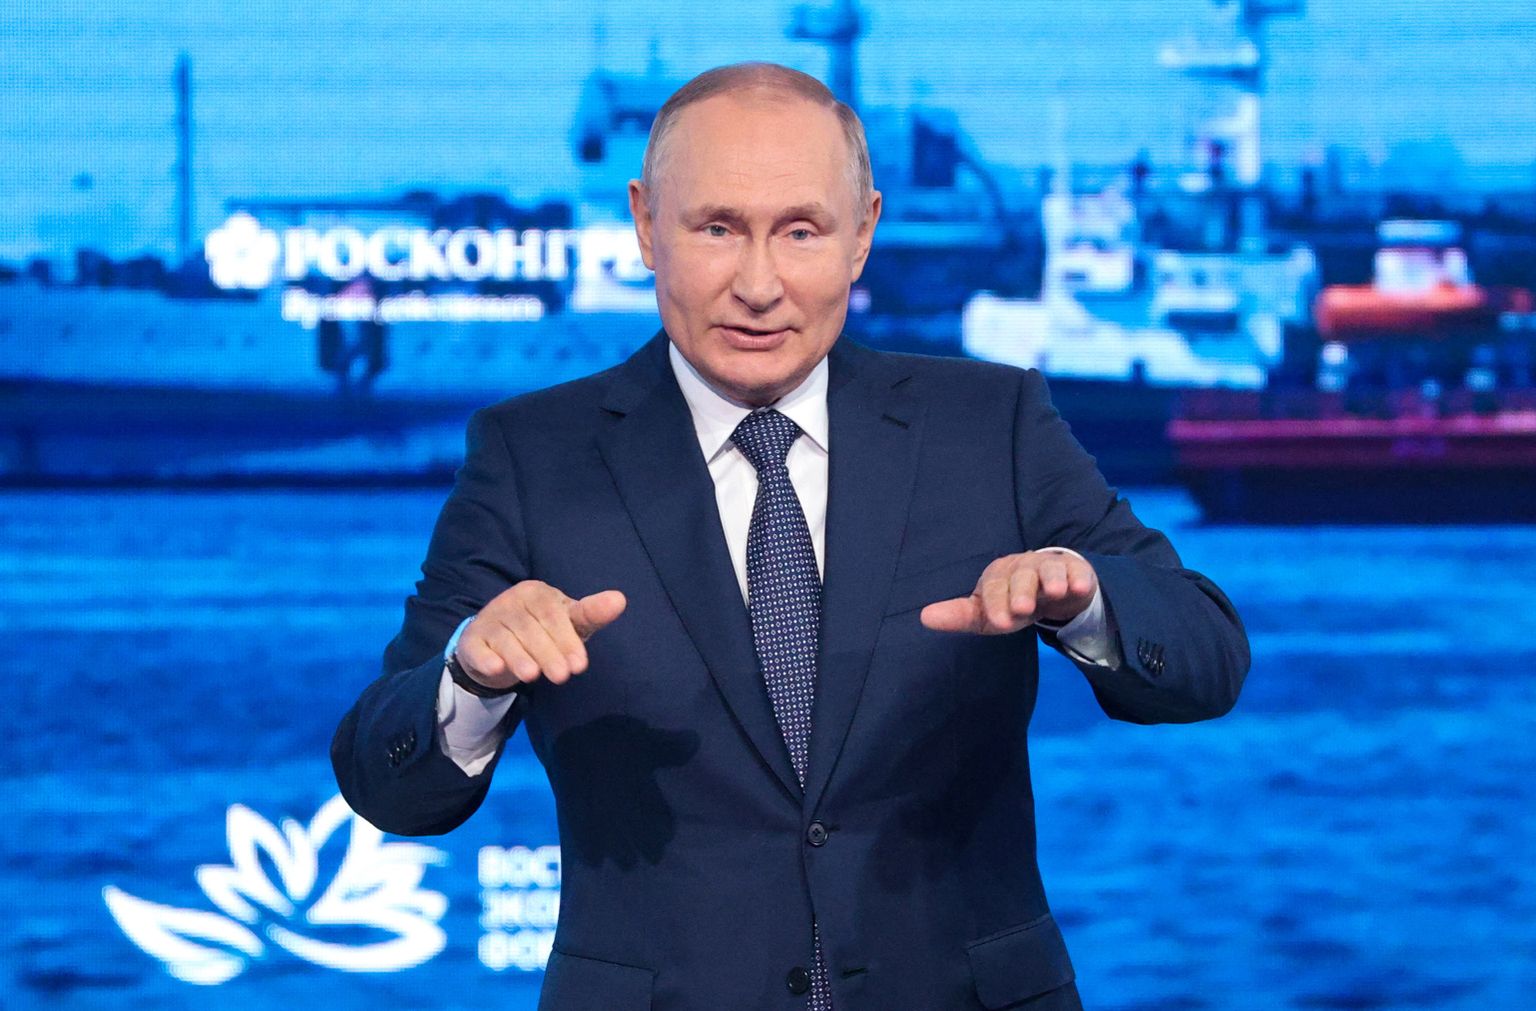 Venemaa president Vladimir Putin esinemas 7. septembril 2022 Vladivostokis Ida majandusfoorumi plenaaristungil